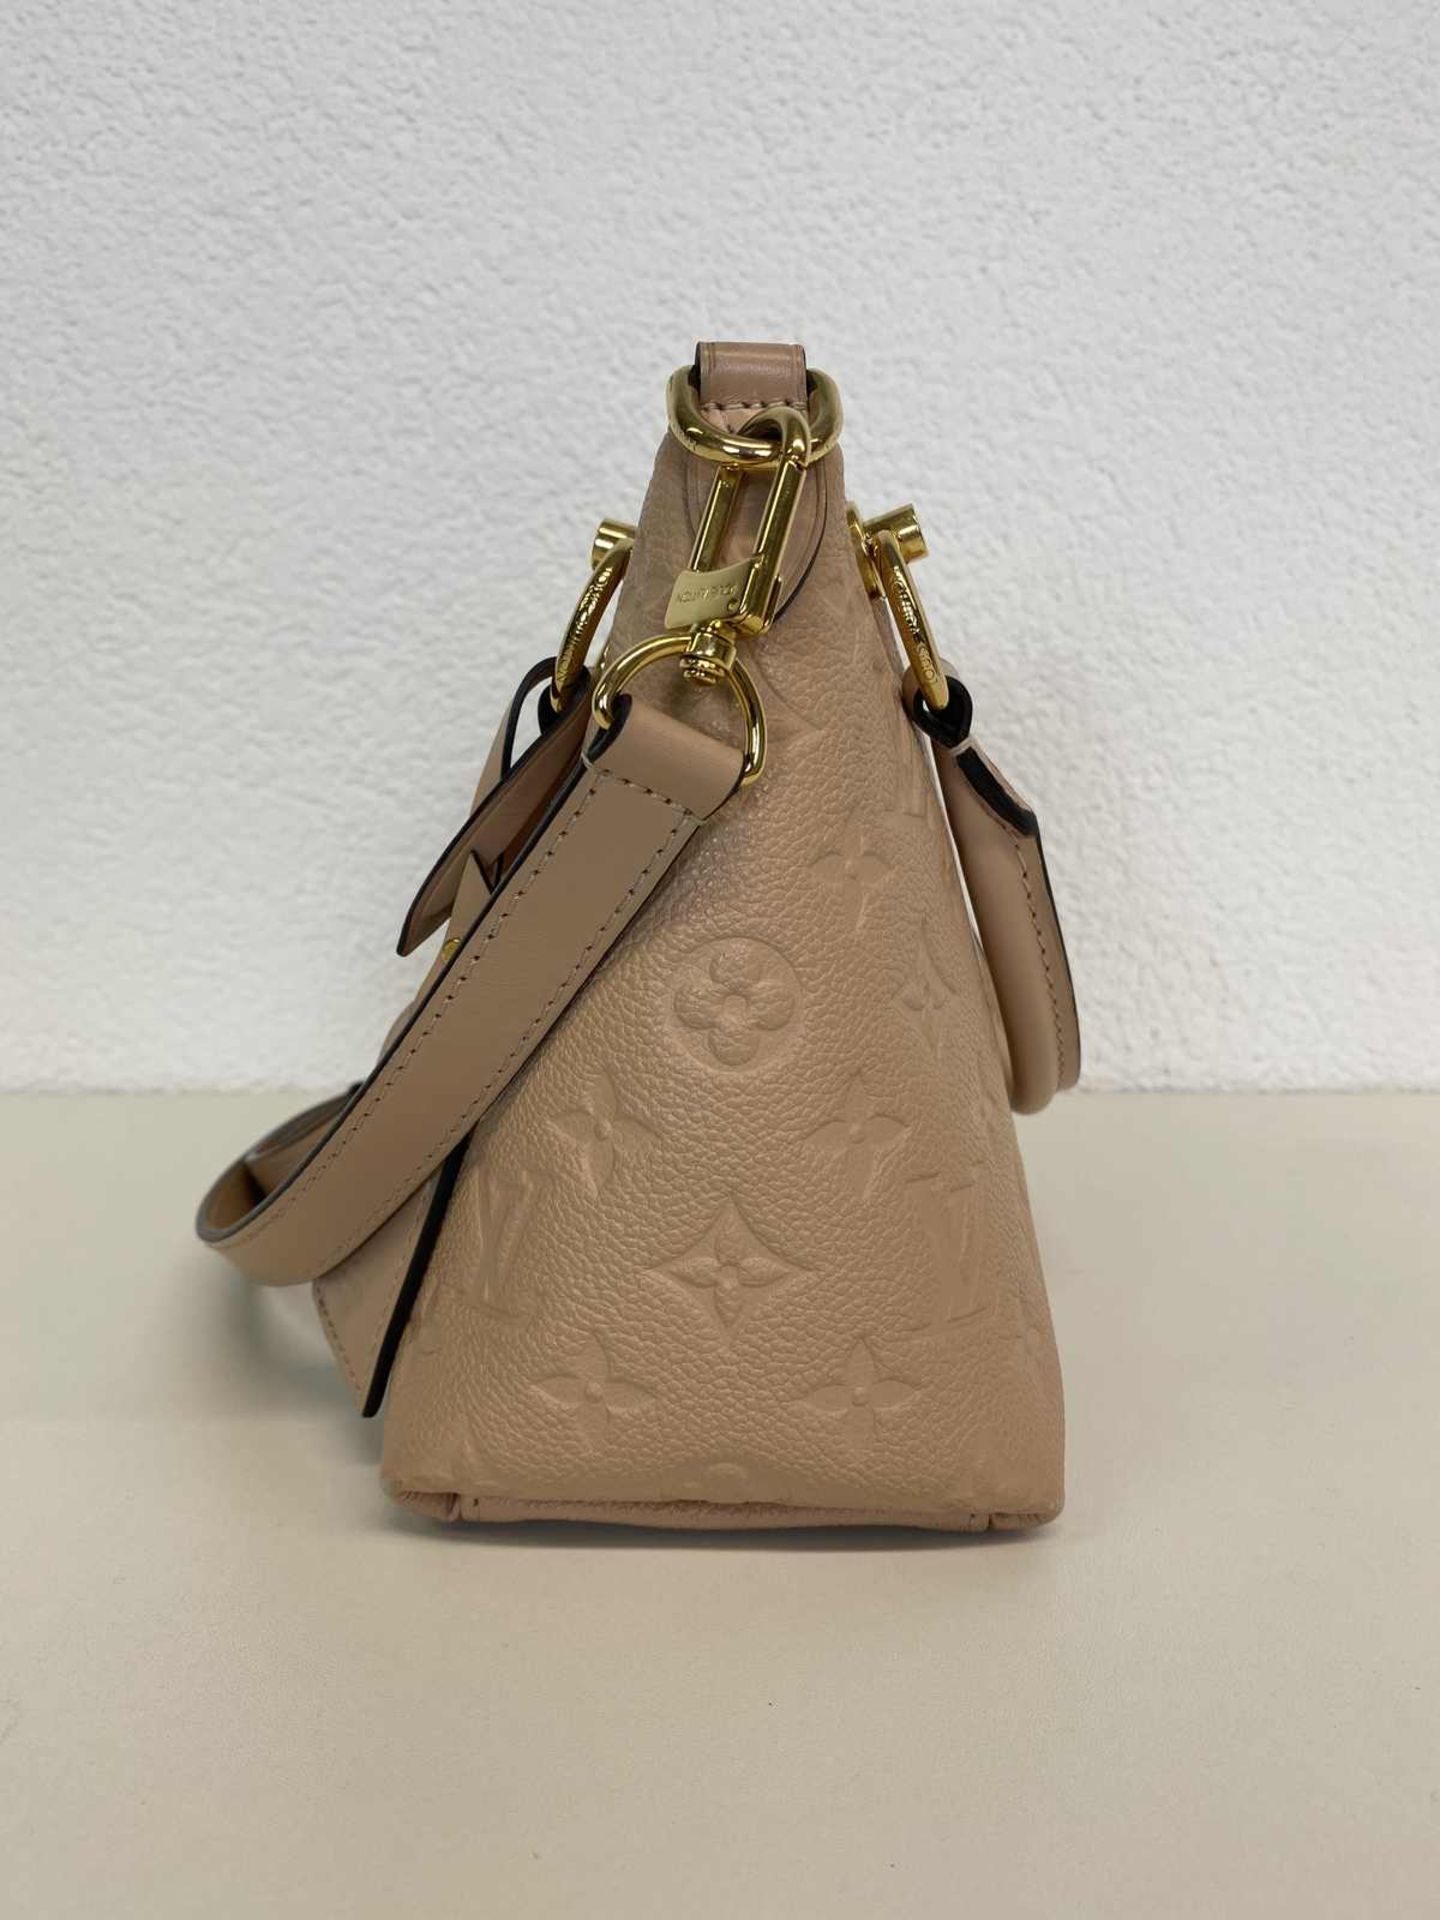 (*) LOUIS VUITTON Handtasche Louis Vuitton Tote Bag, Leder in creme beige mit Monogram Prägung. - Bild 4 aus 7